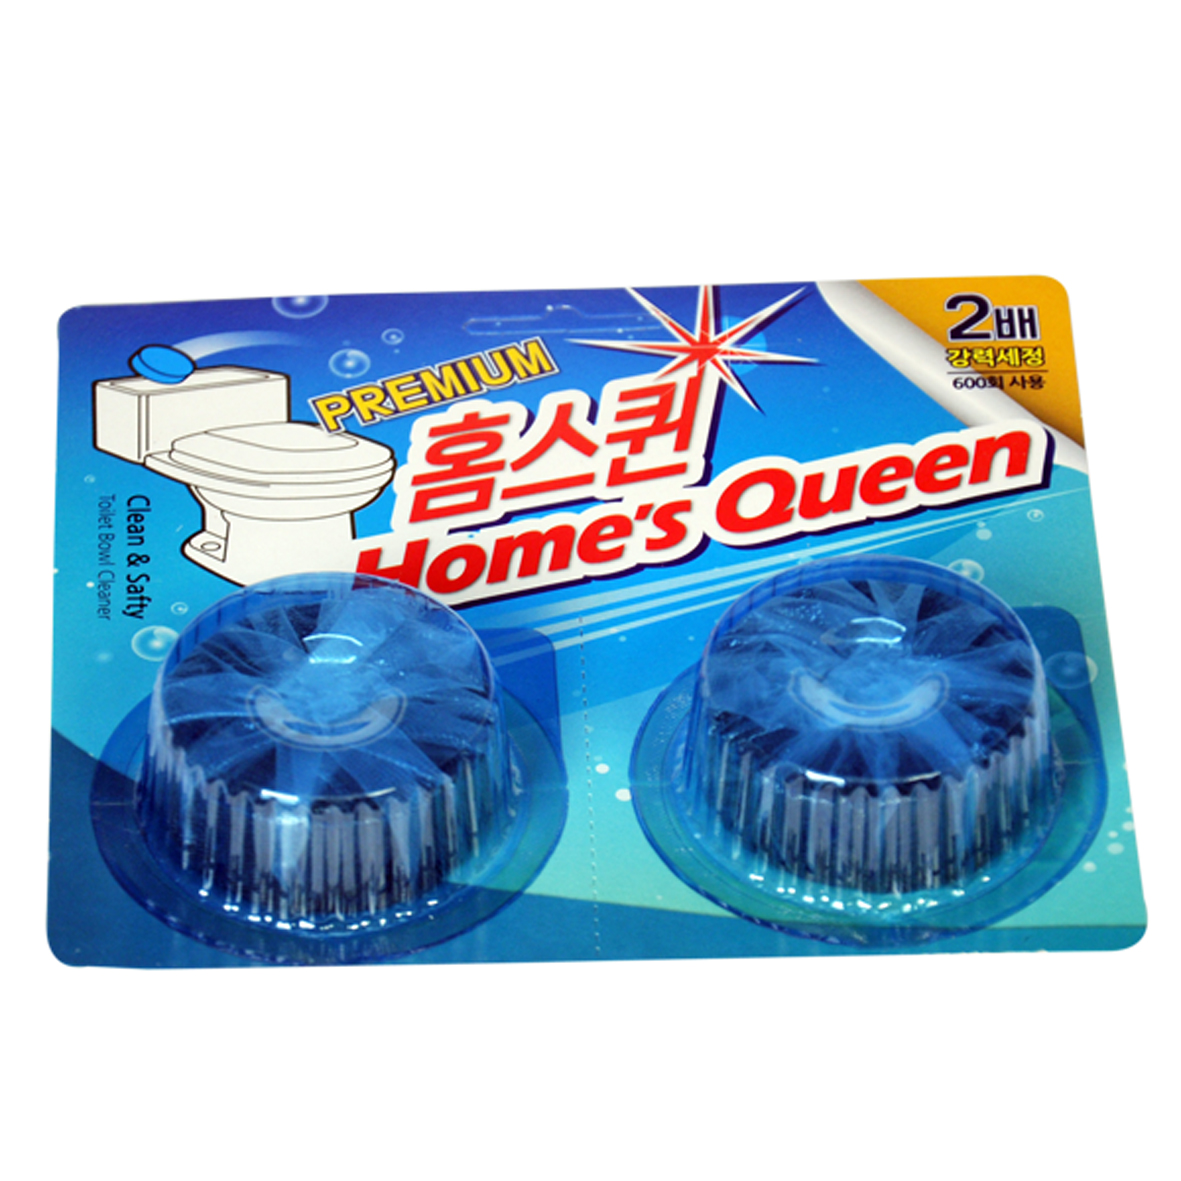 Combo 10 vỉ vệ sinh khử mùi Toilet Homes Queen nhập khẩu Hàn Quốc